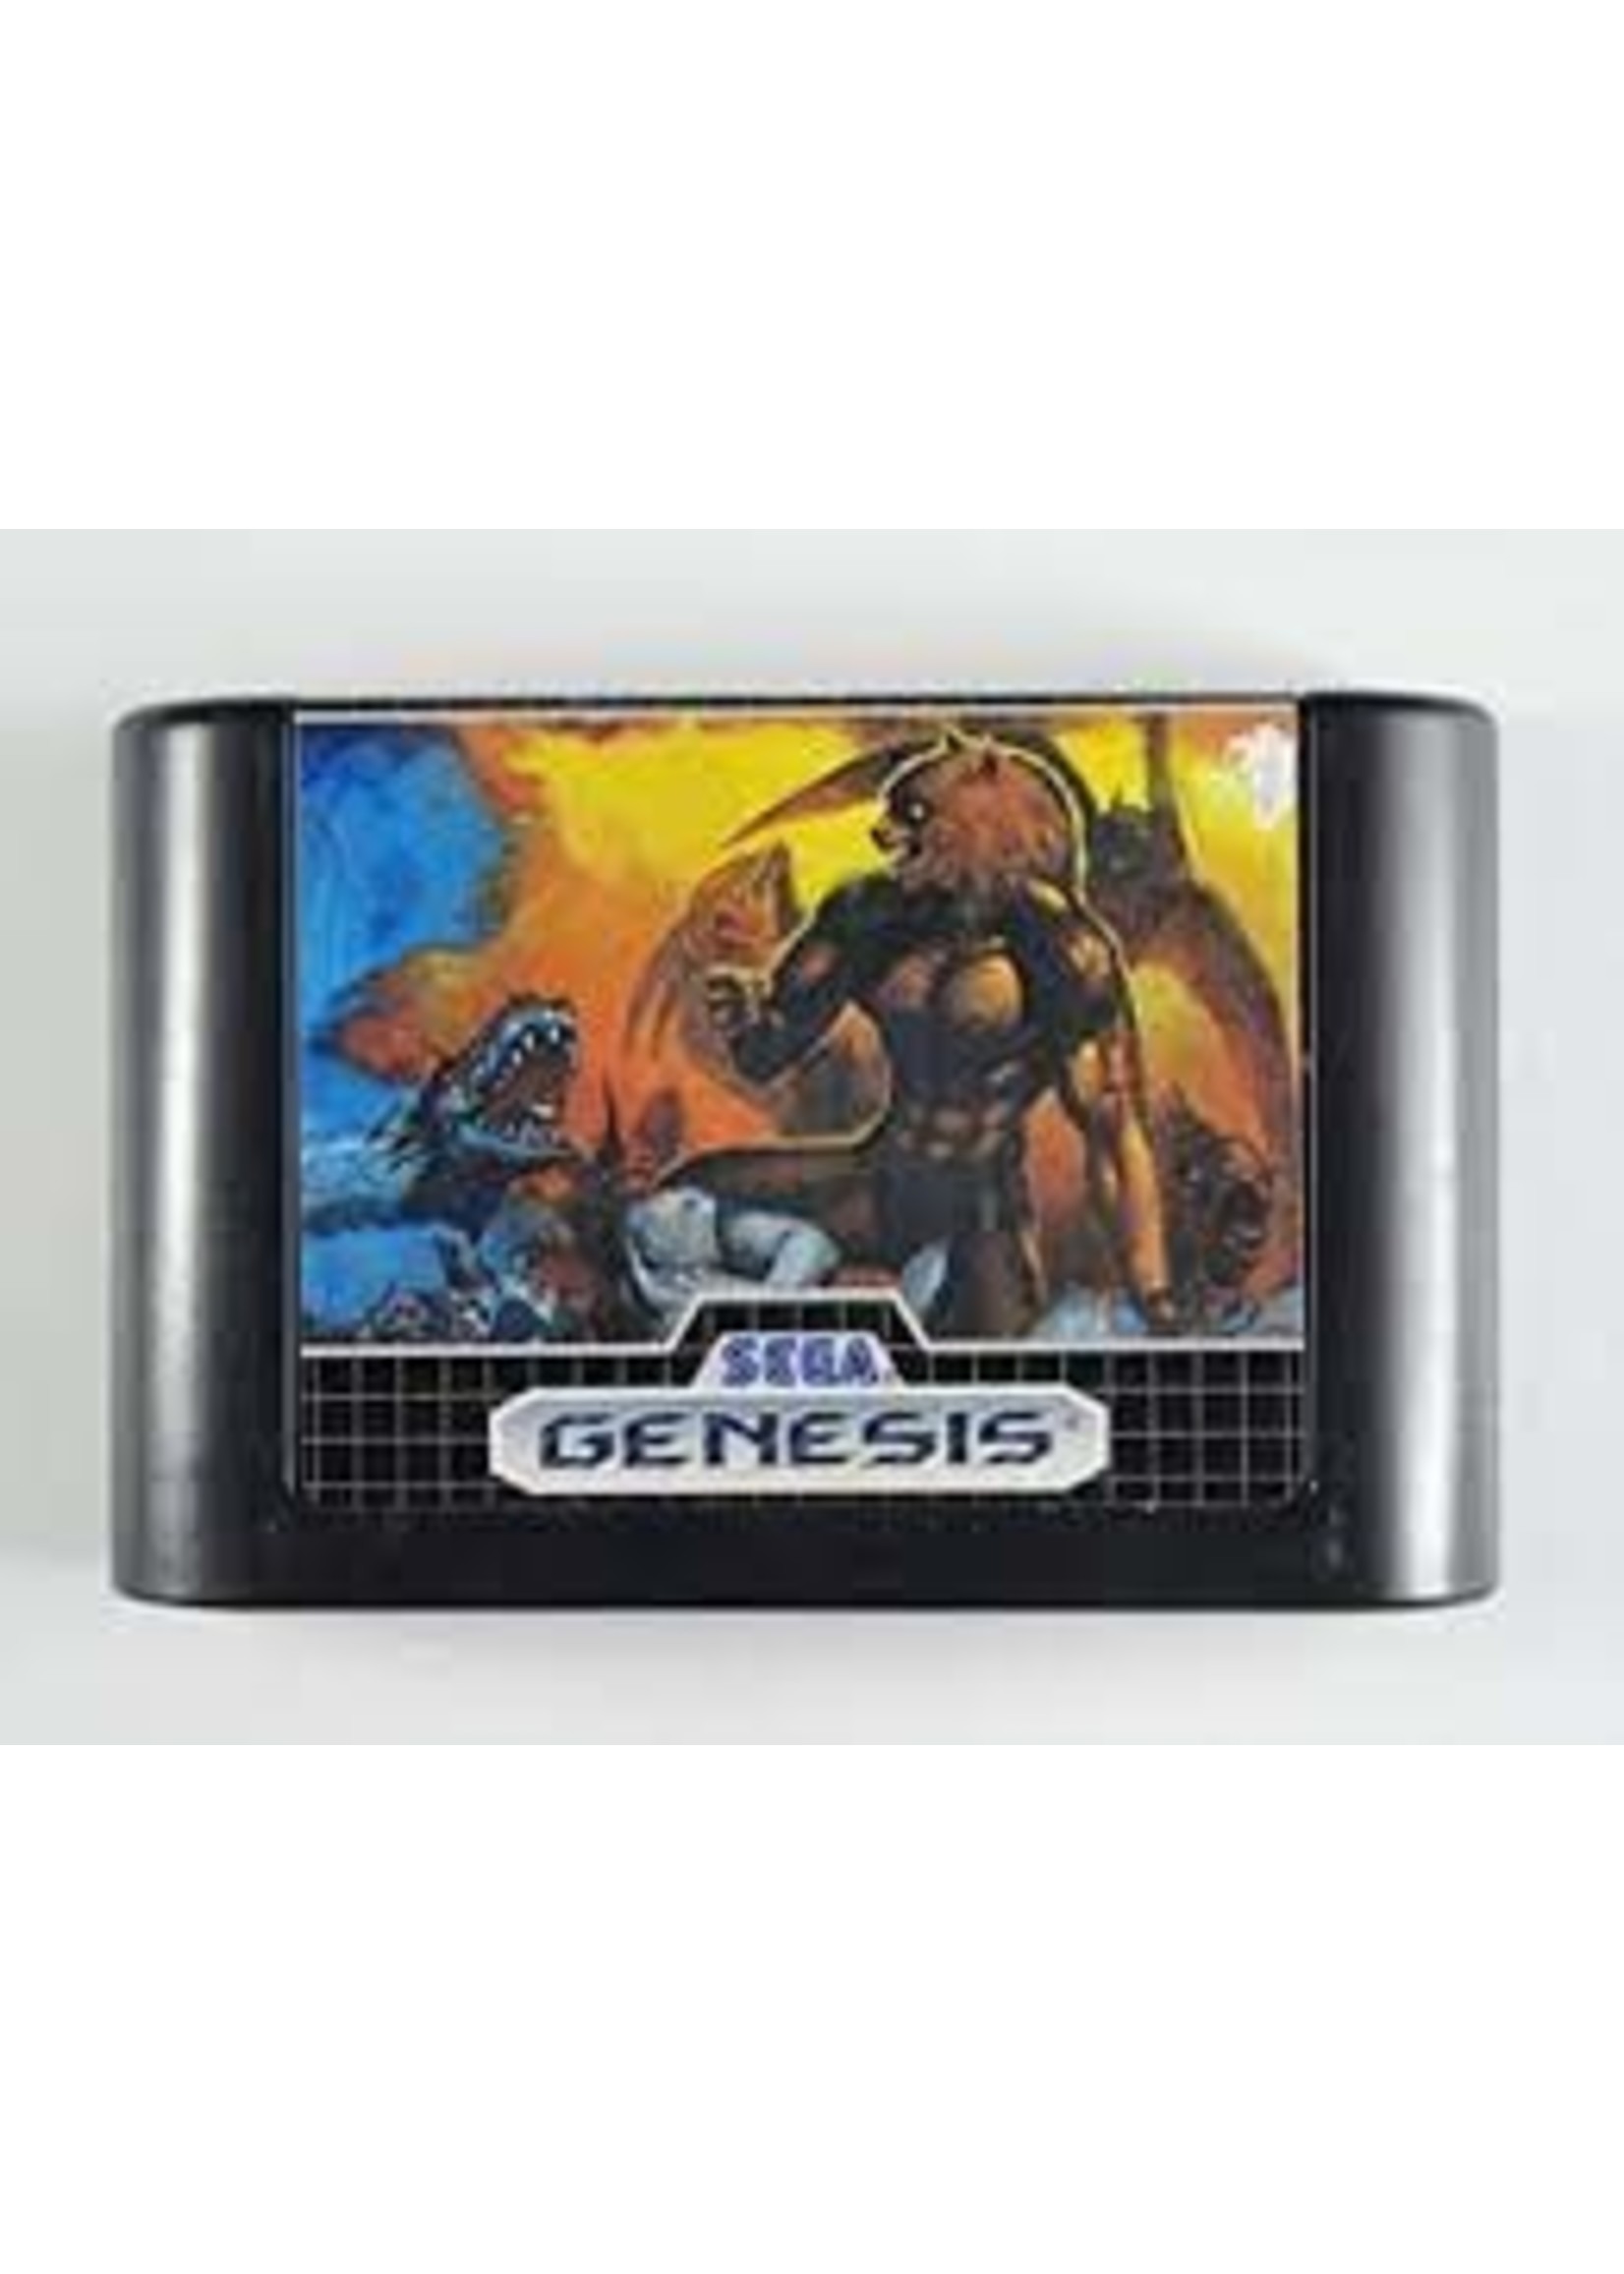 Sega Genesis Altered Beast